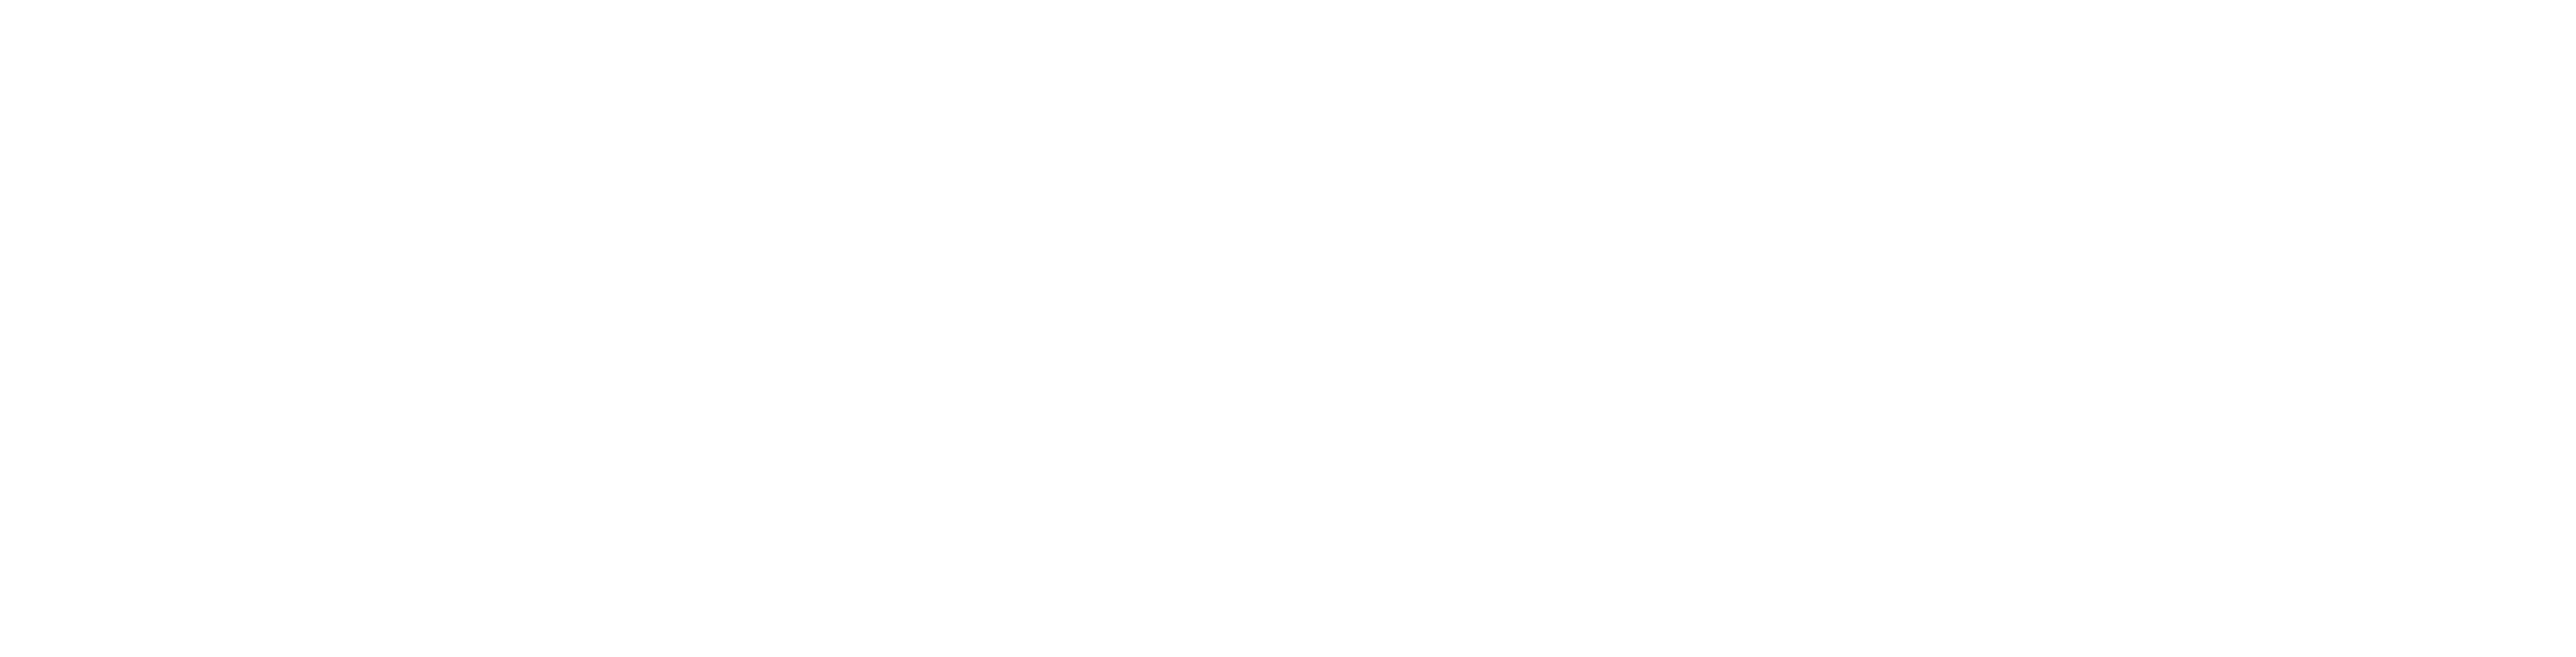 Gobierno Bolivariano de Venezuela